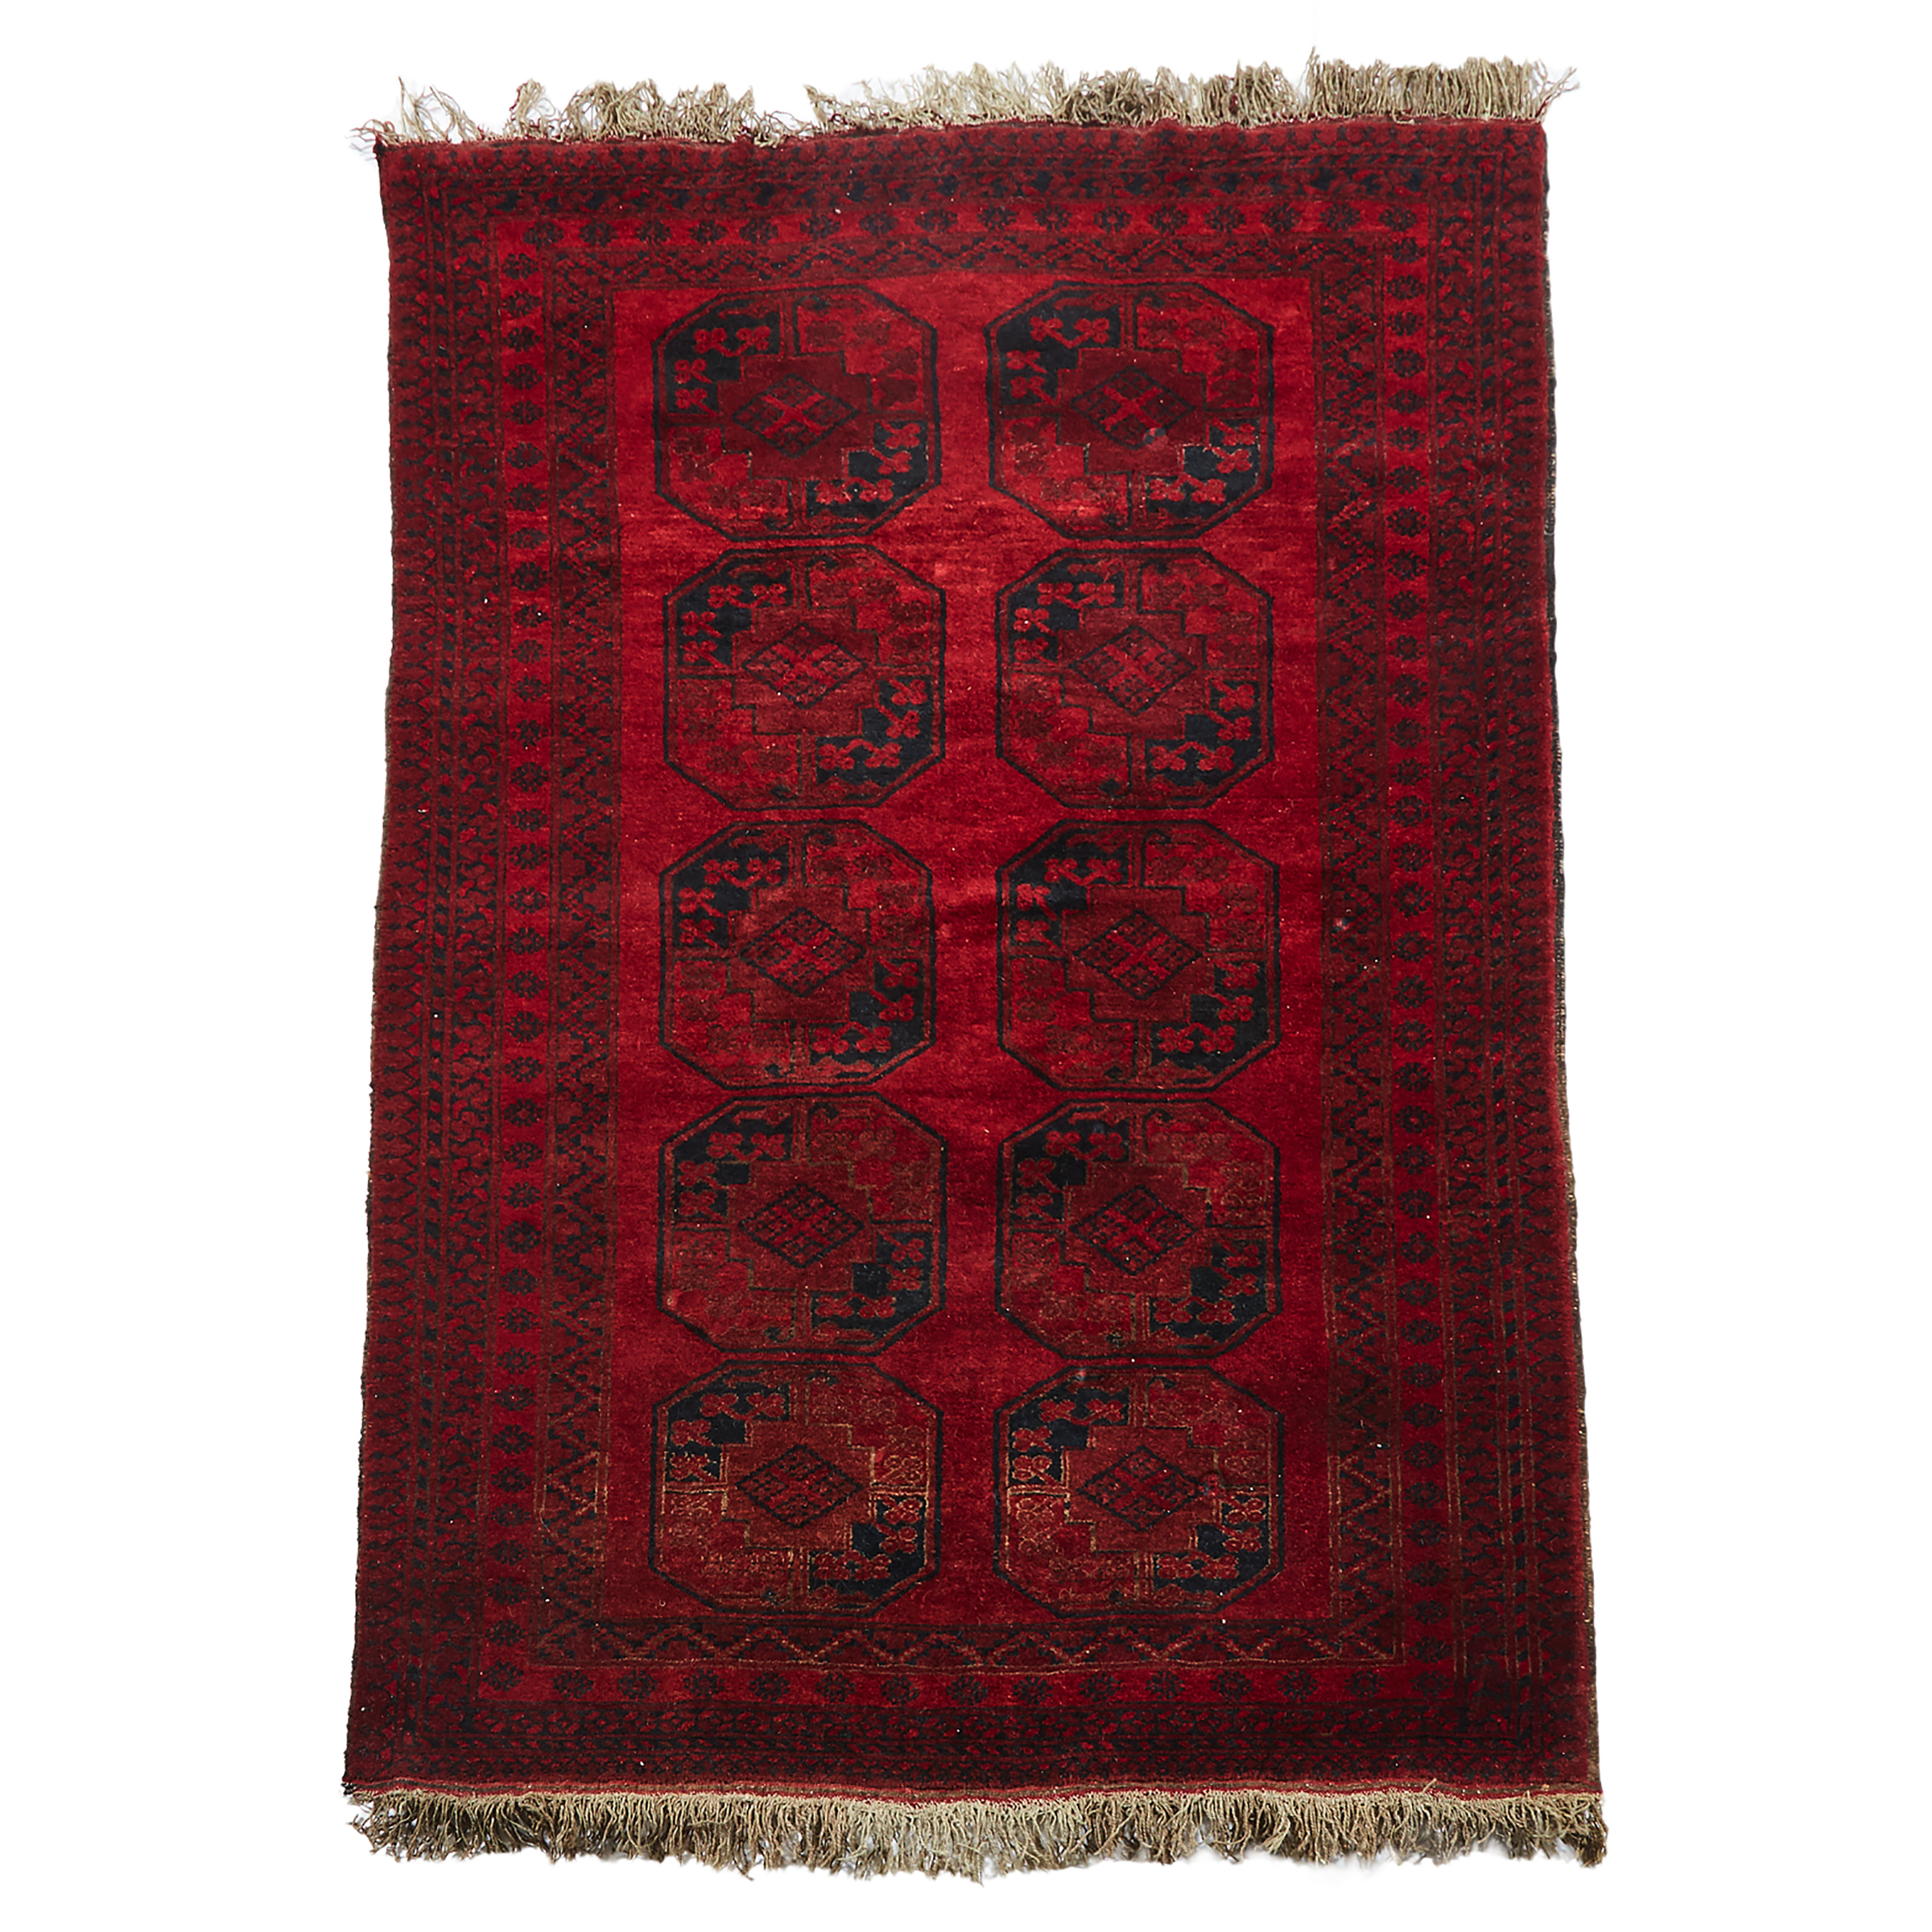 Ersari Carpet, Central Asia, mid 20th century